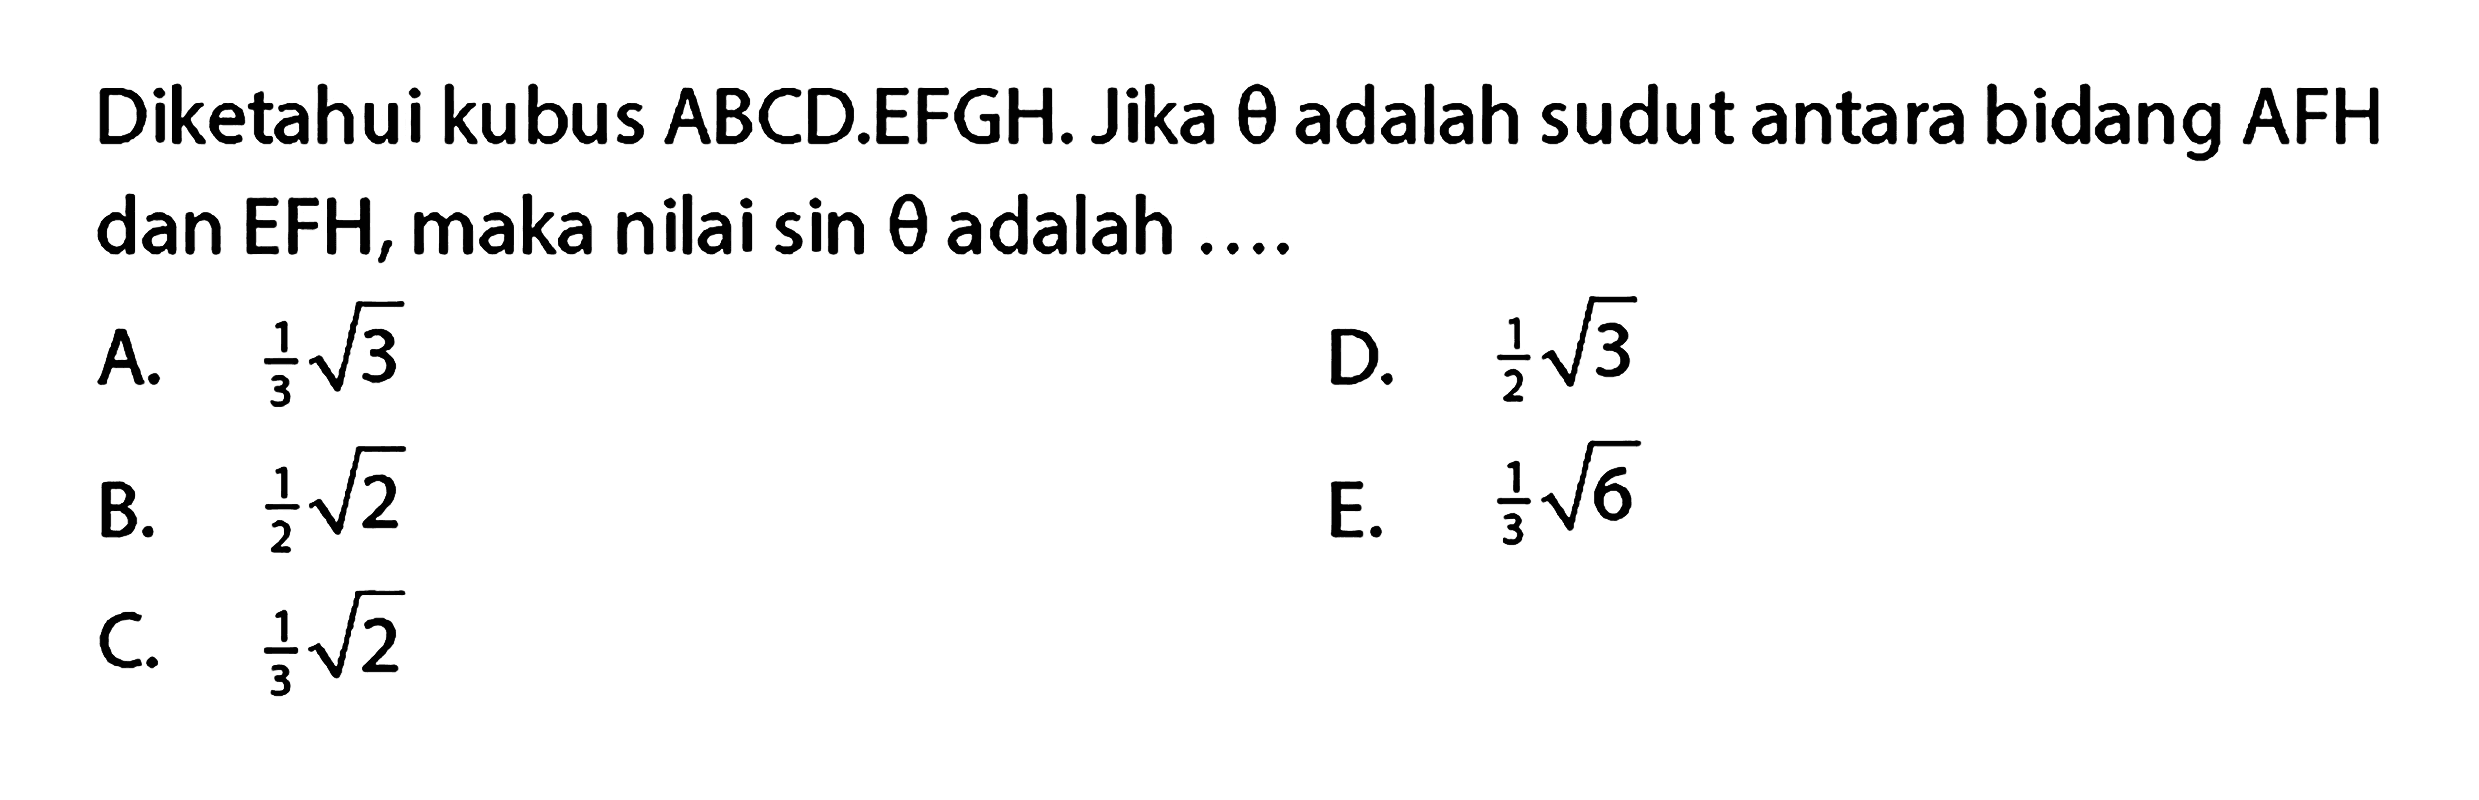 Diketahui kubus ABCD.EFGH. Jika theta adalah sudut antara bidang AFH dan EFH, maka nilai sin theta adalah ....